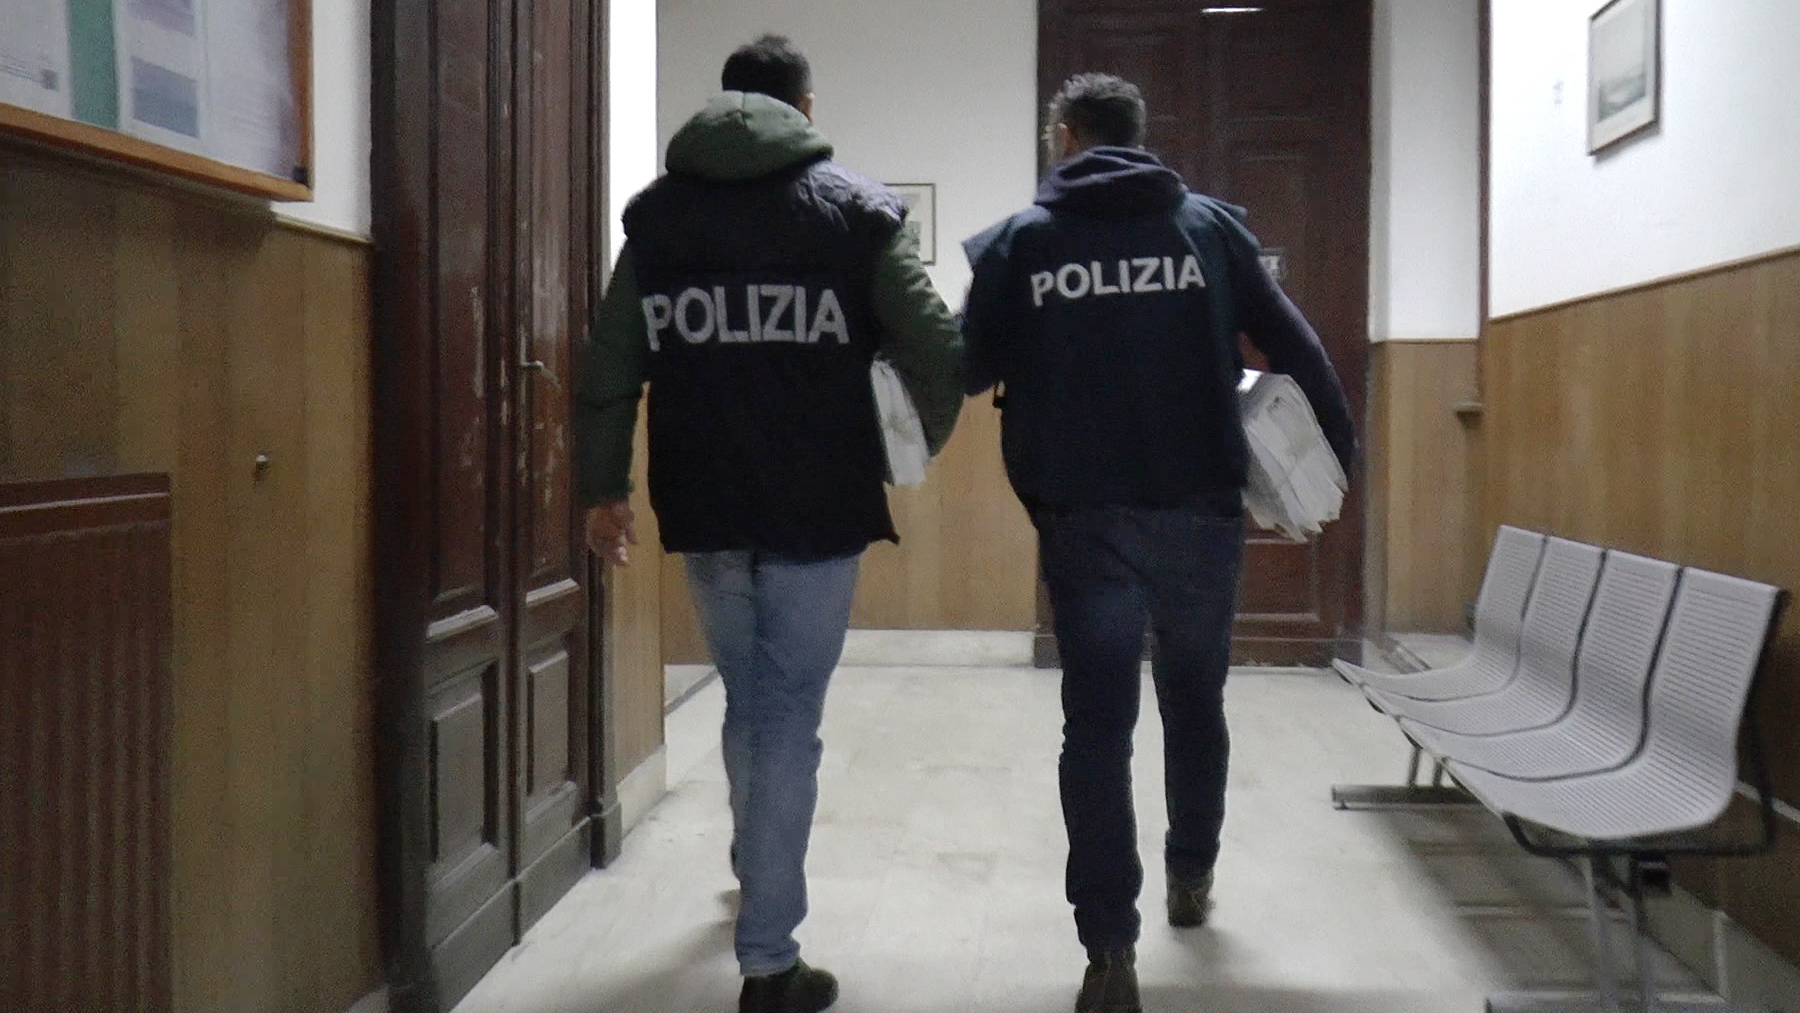 Operazione “Odissea”, 18 arresti a Catania nella notte